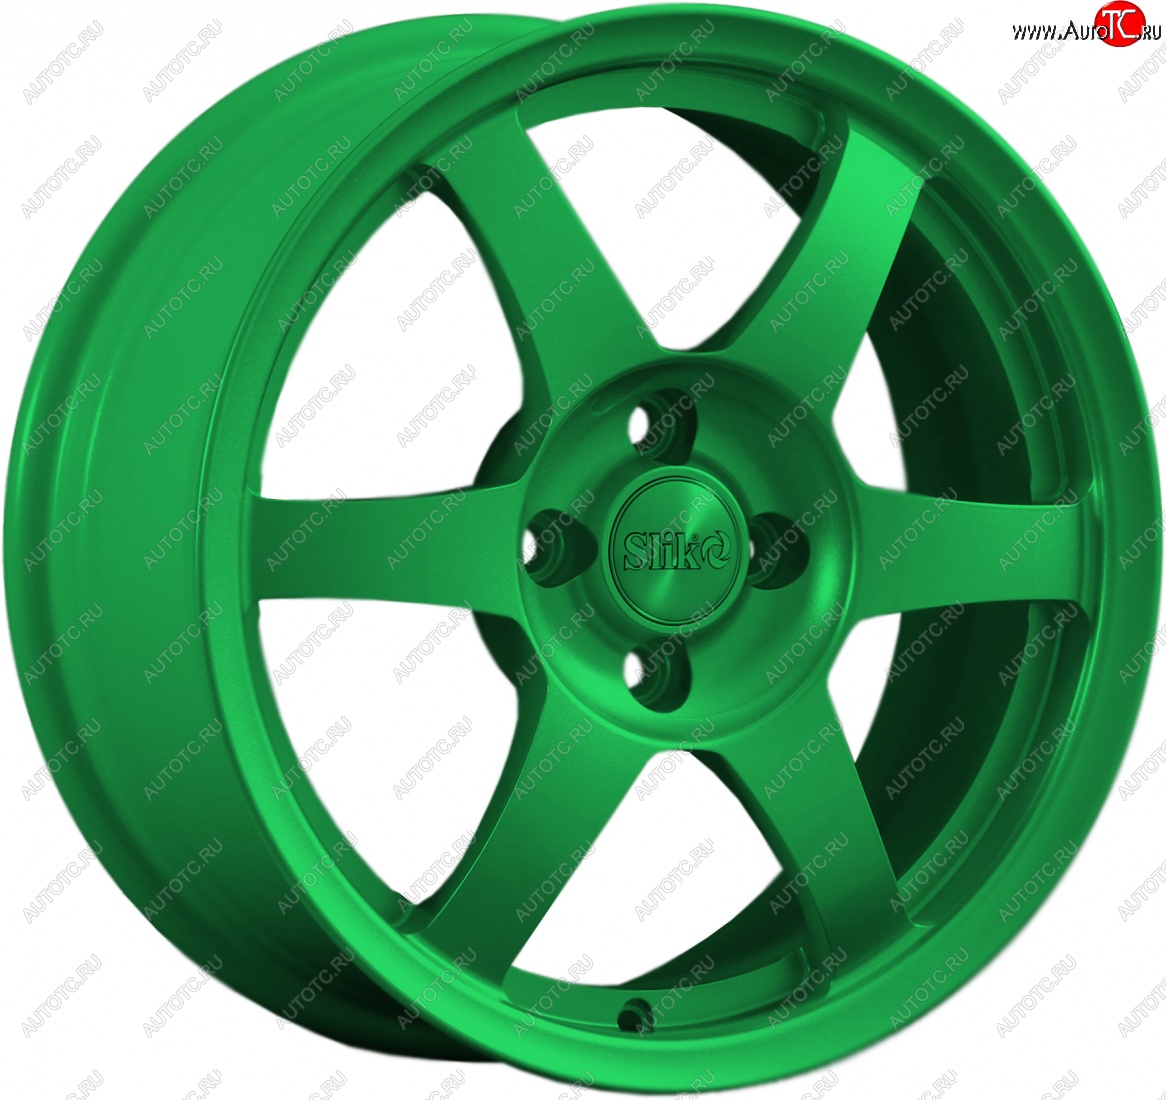 18 999 р. Кованый диск Slik Classik 6.5x16 (Зеленый)   (Цвет: Зеленый)